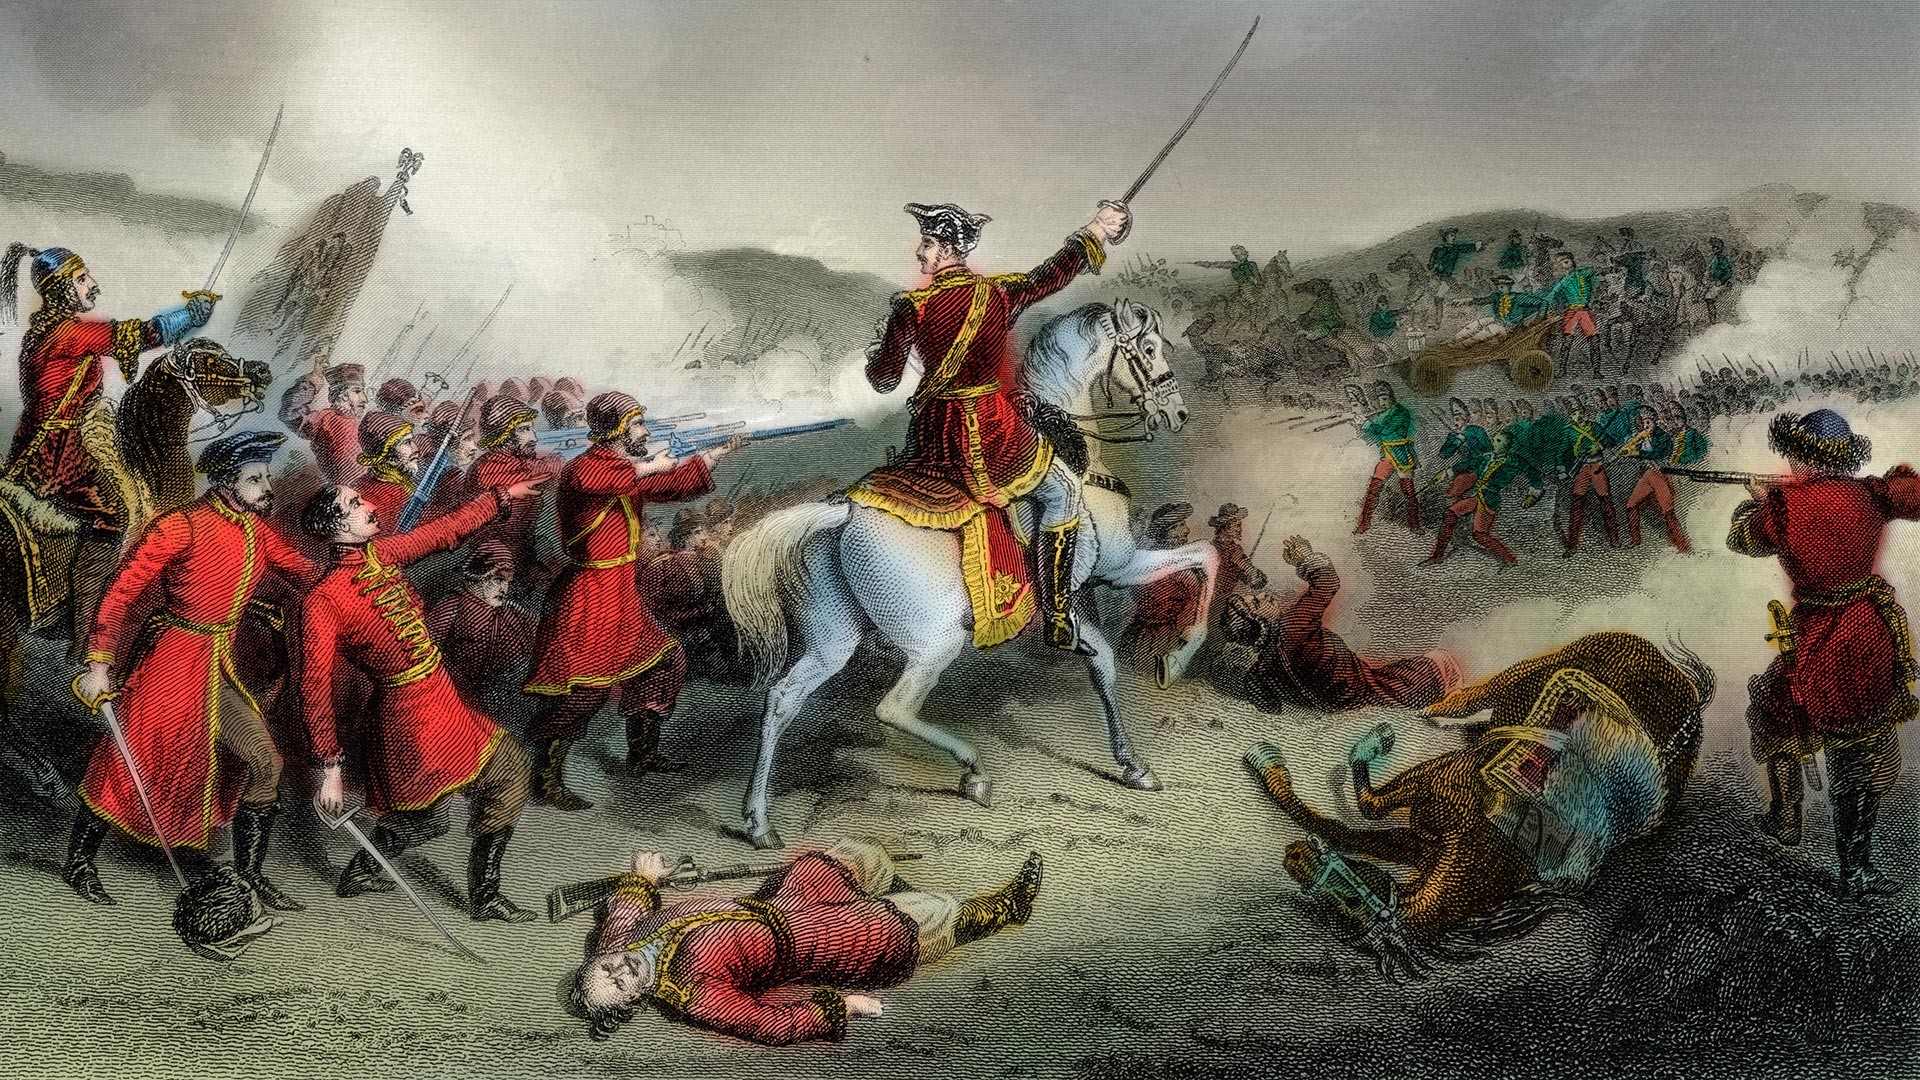 La battaglia di Poltava del 27 giugno 1709 fu la vittoria decisiva di Pietro I di Russia su Carlo XII di Svezia in una delle battaglie della Grande guerra del nord (1700-21) tra Russia e Svezia